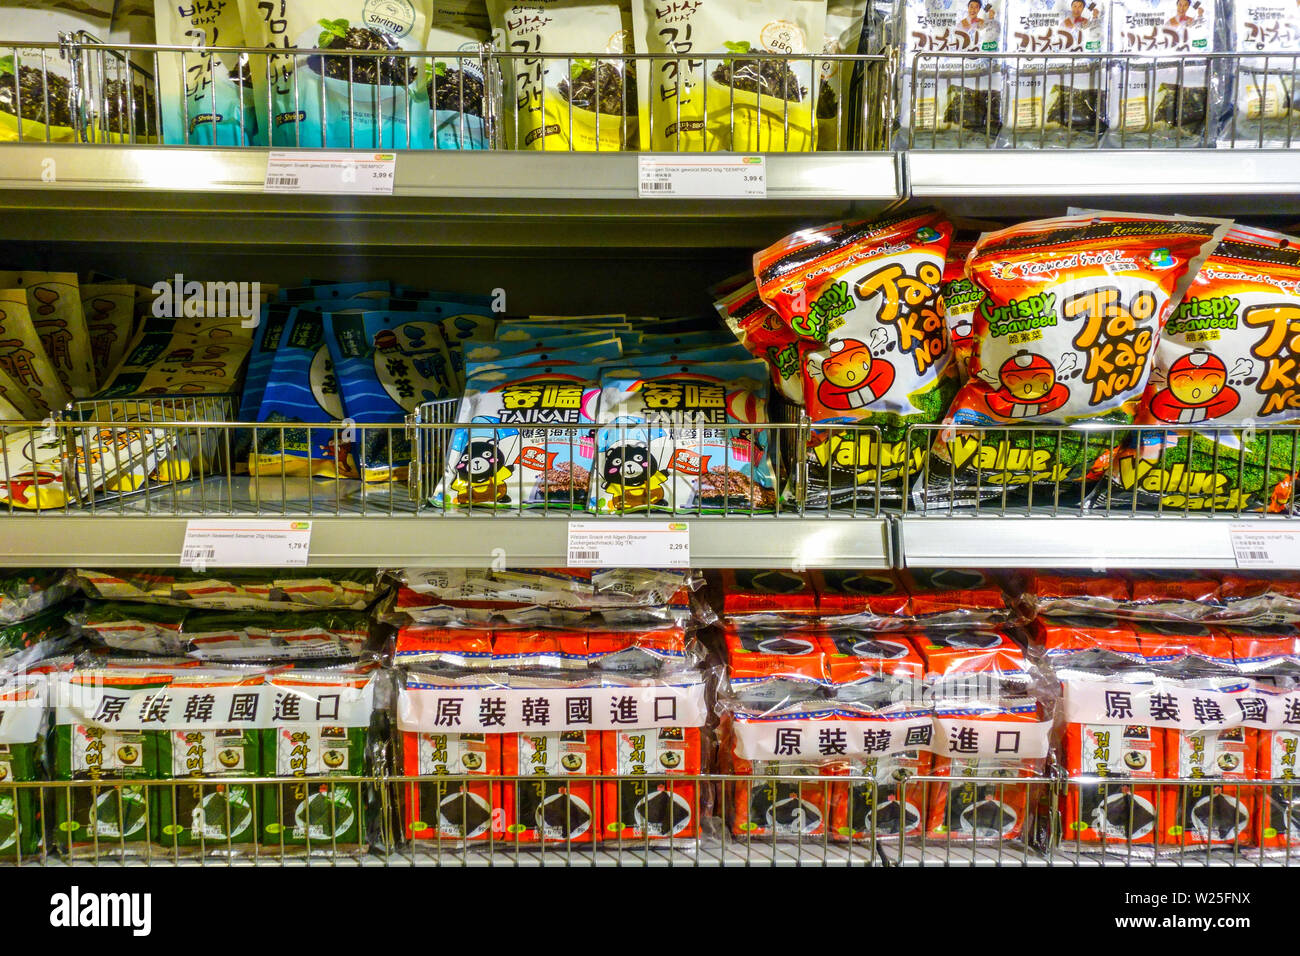 Asiatischer Supermarkt 'Go Asia' Supermarktregale, Seegras Dresden, Deutschland Supermarktregal Stockfoto